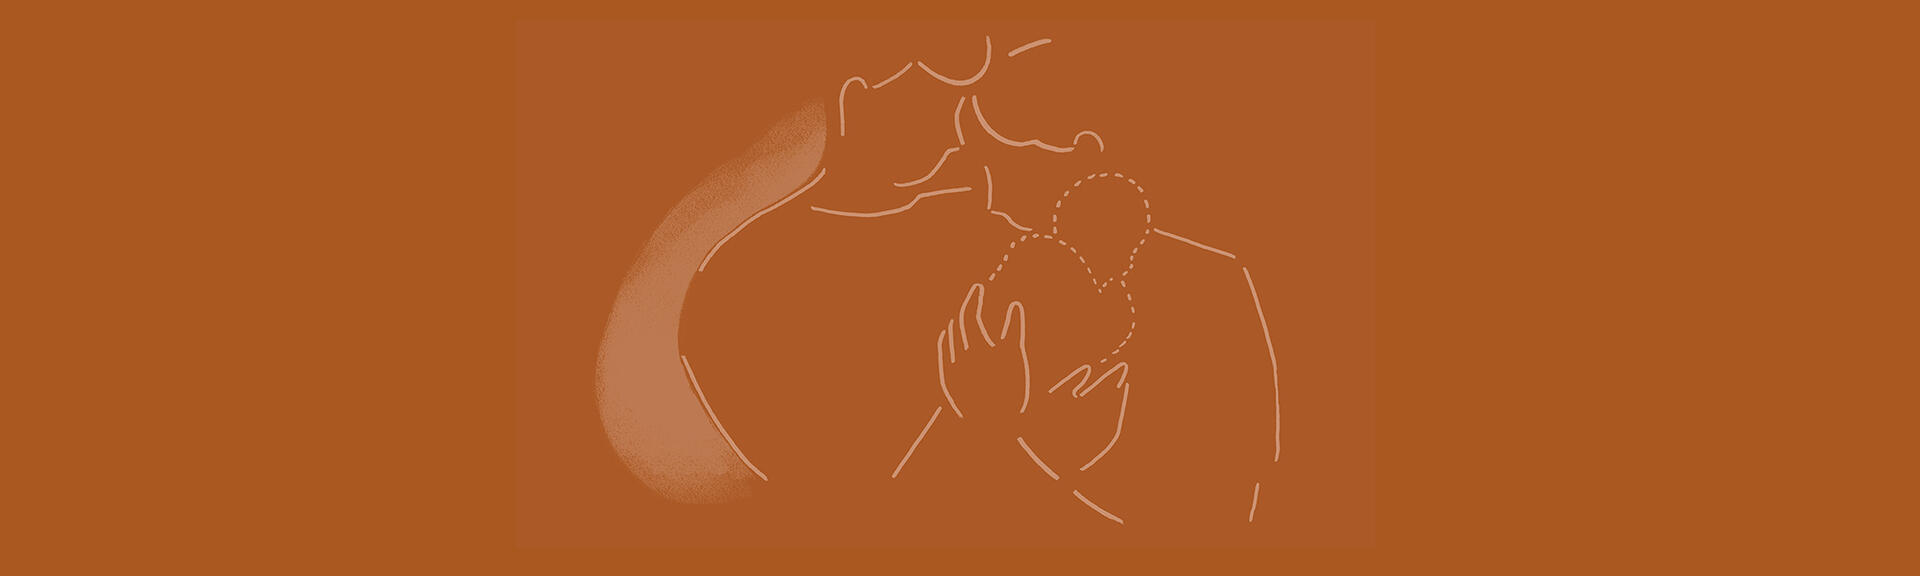 Tegnet illustrasjon av foreldrepar med spedbarn i armene - spedbarnet tegnet med striplet strek